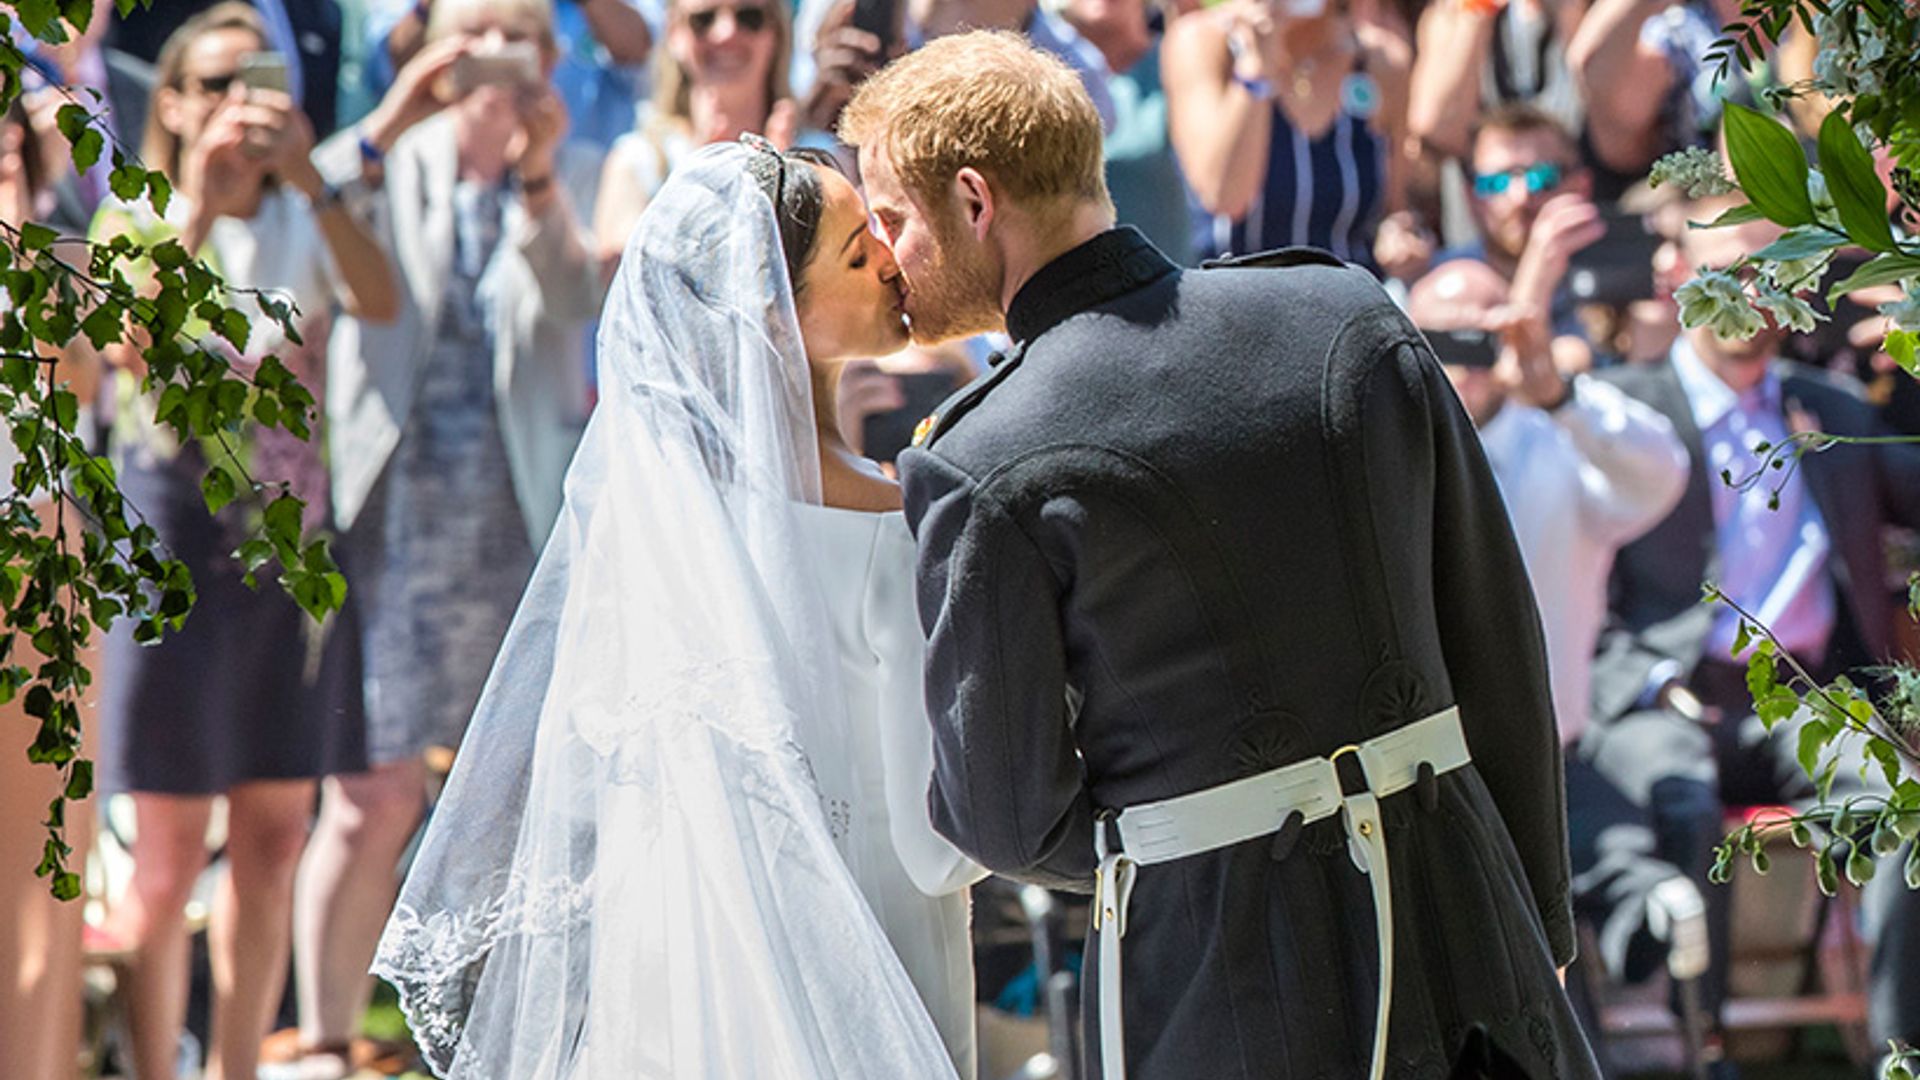 Prince Harry had a sneak peek of Meghan's wedding look before the big day – details